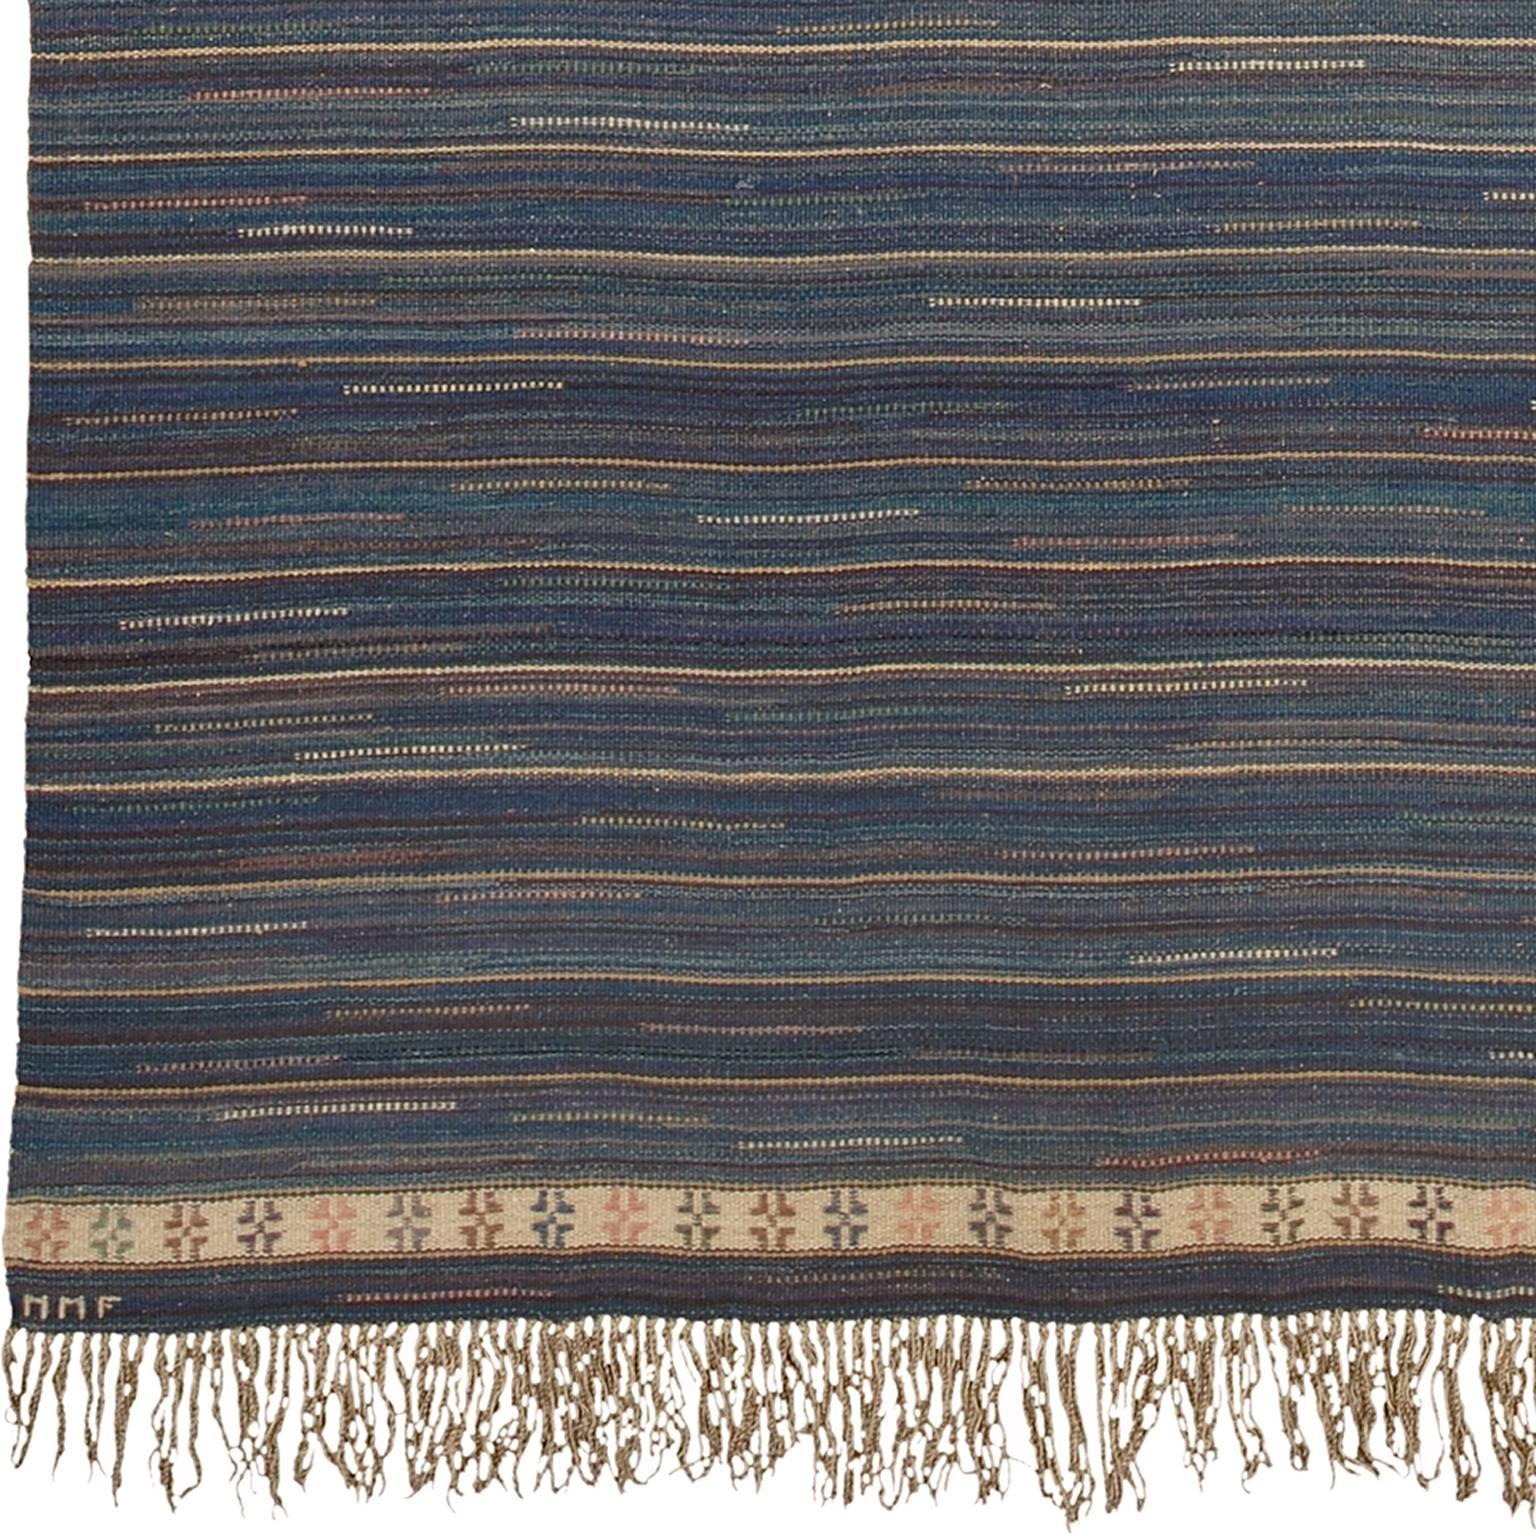 Swedish Flat Weave Rug
Handwoven